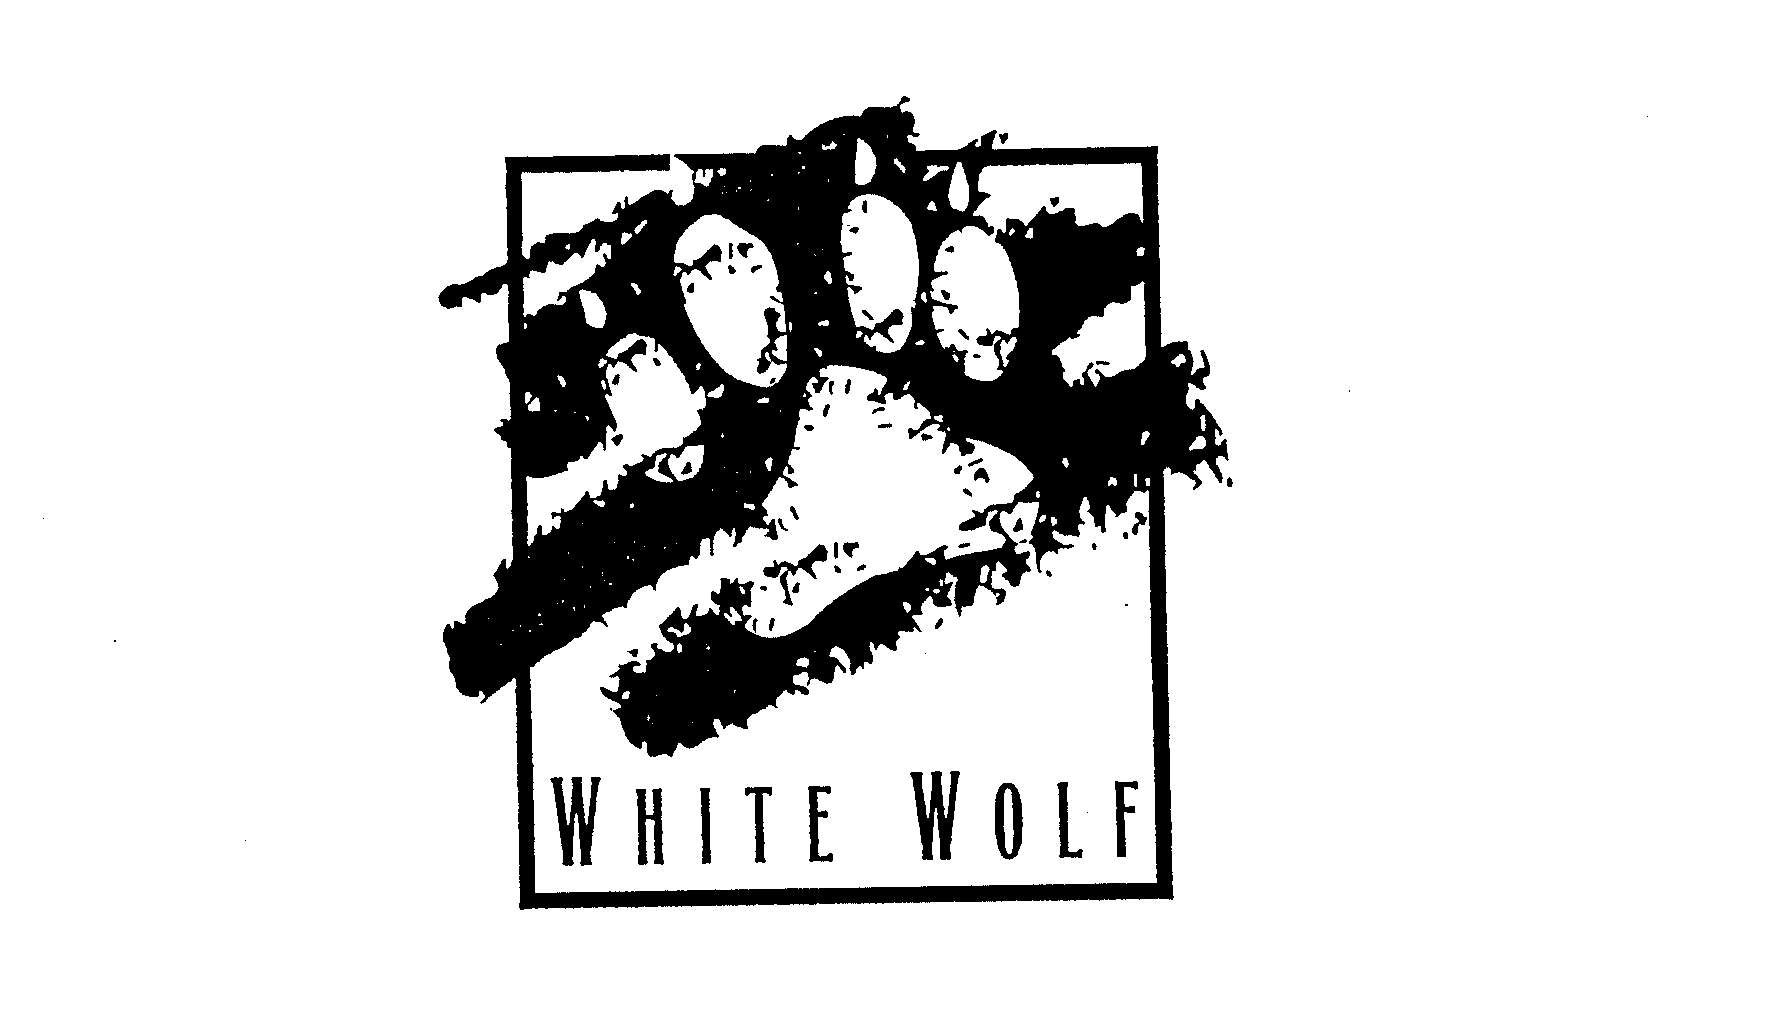 Trademark Logo WHITE WOLF